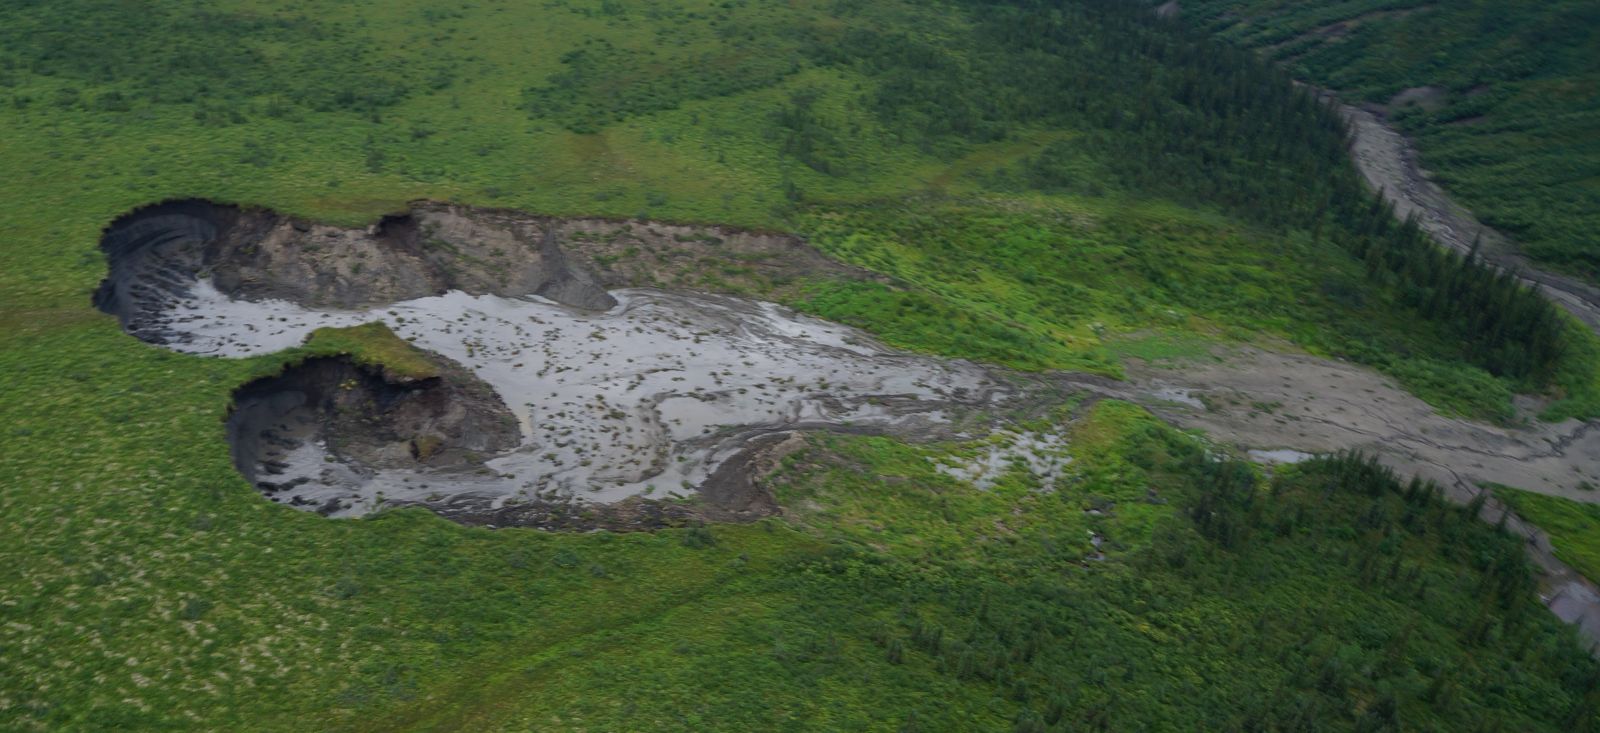 Landslide. Photo by R. Fraser, NRCan. # 2014-039